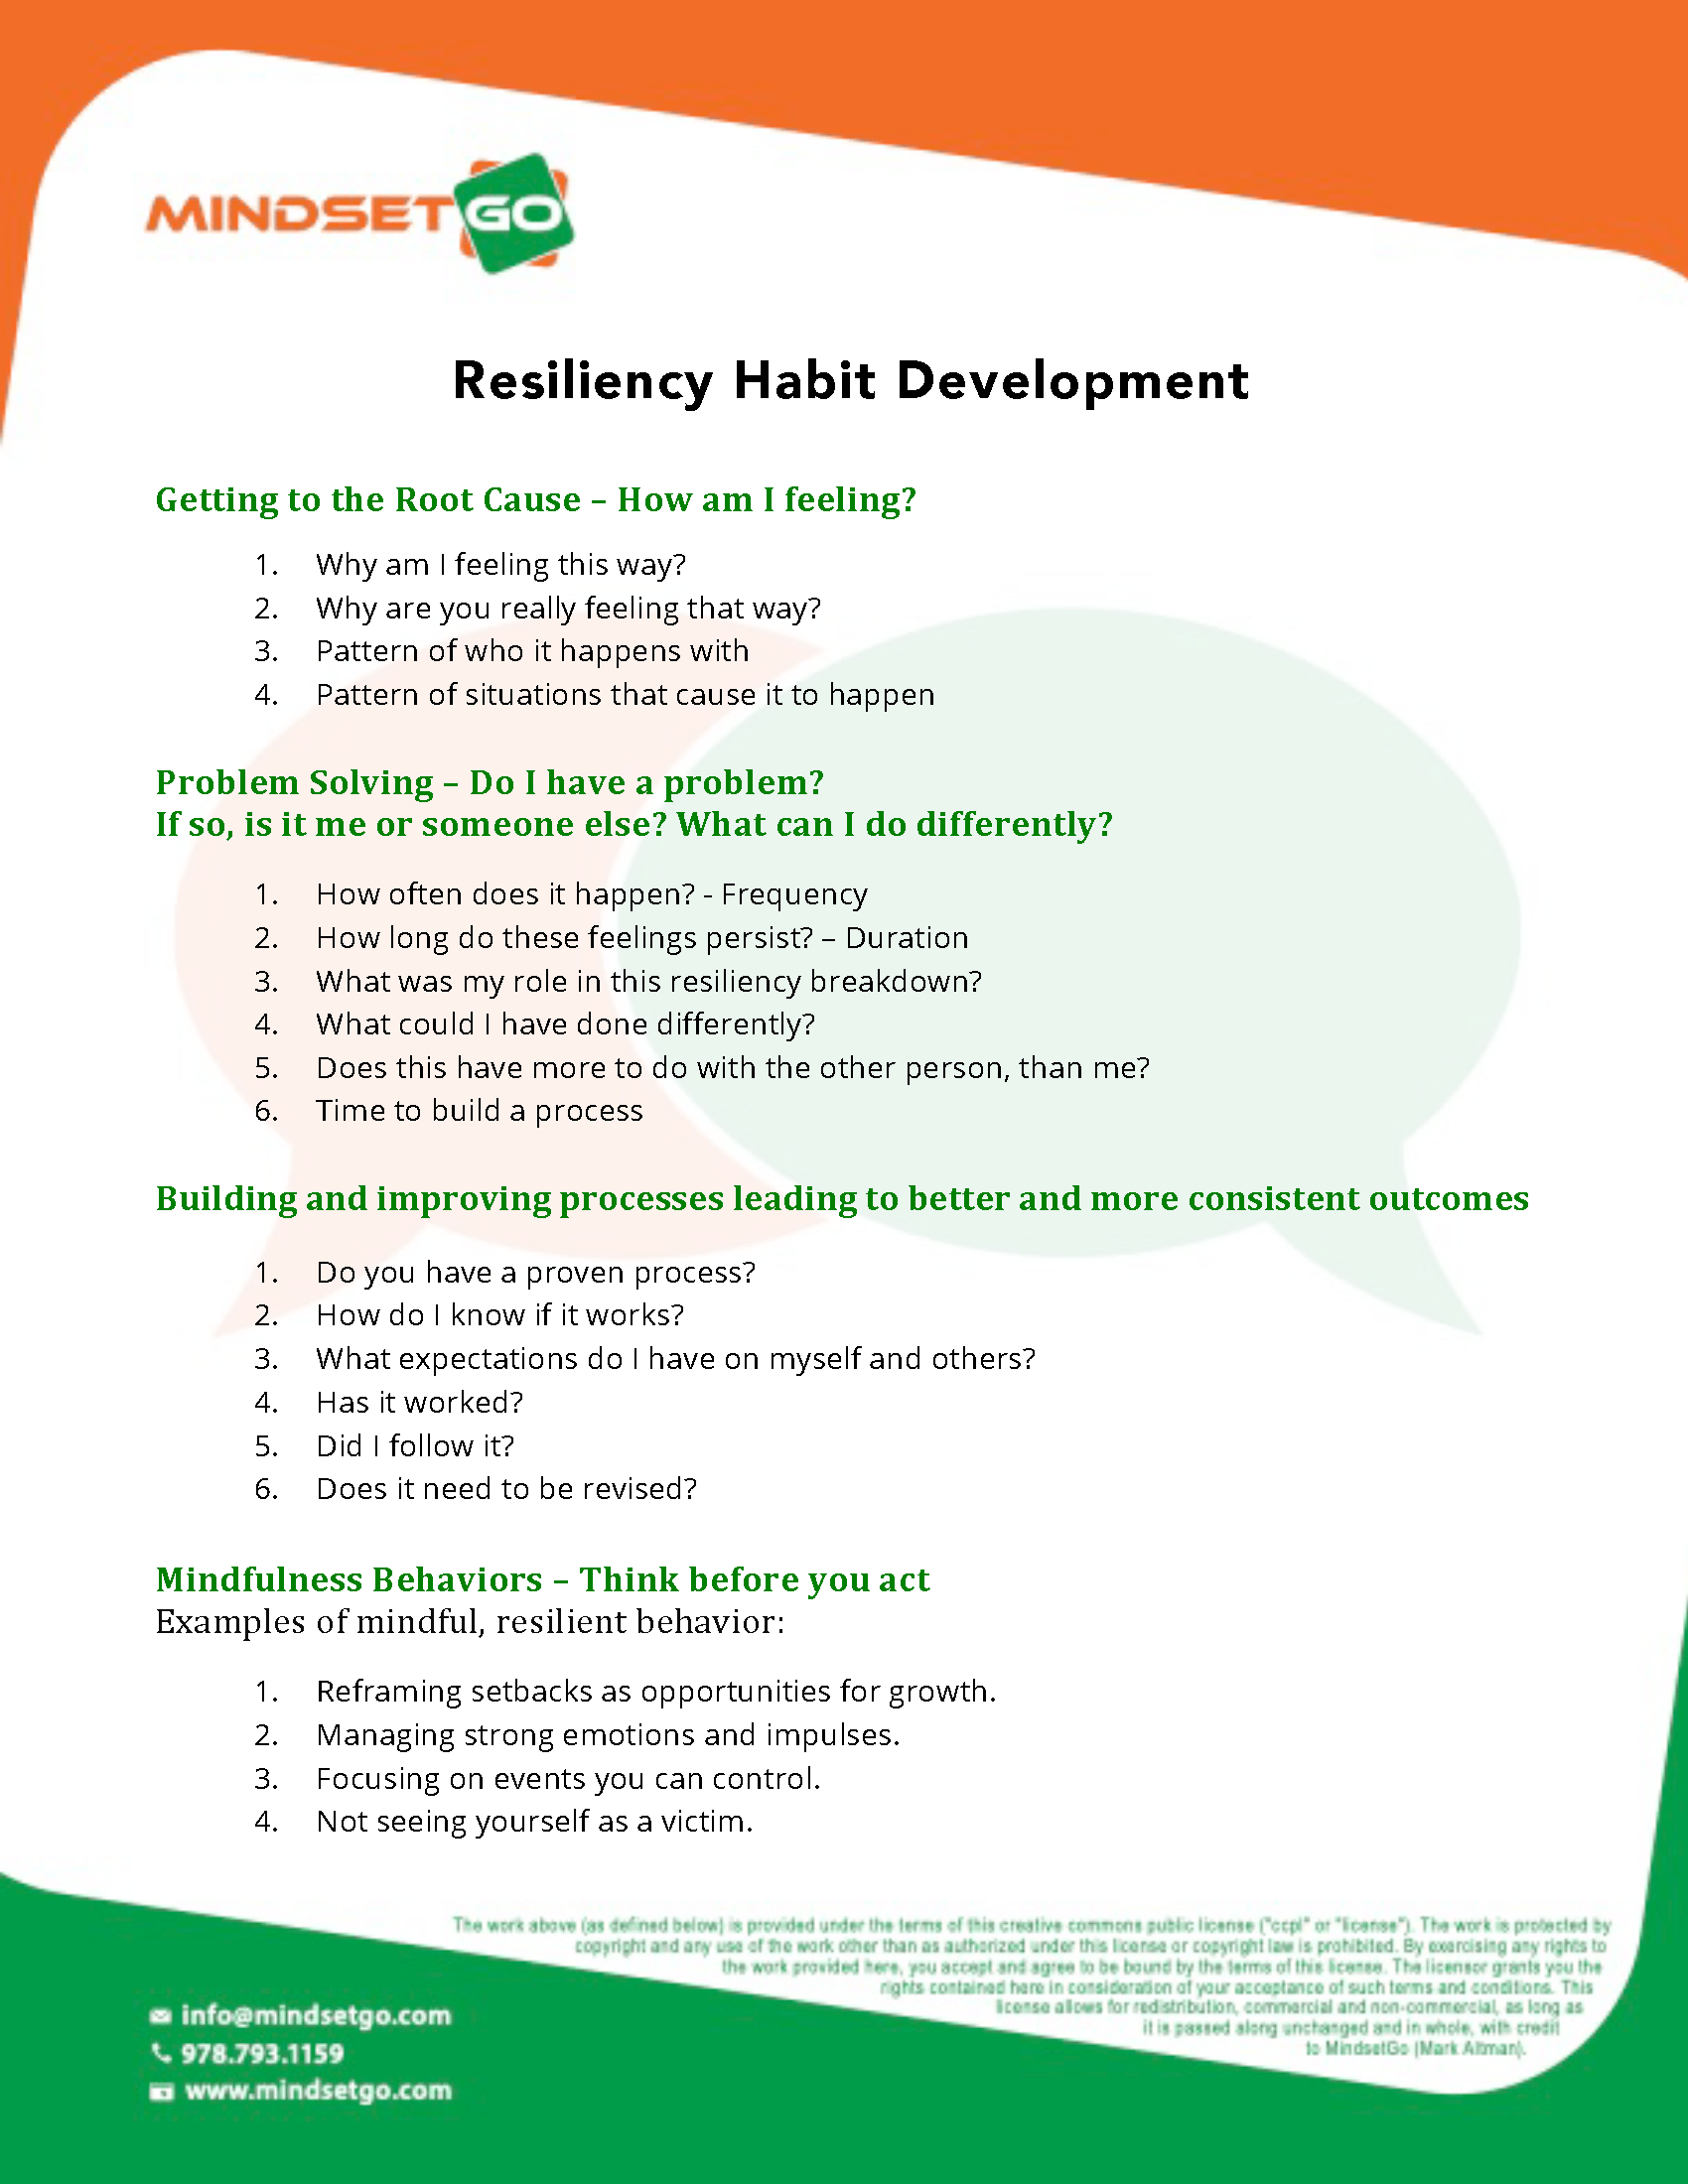 Resiliency Habit Development Process